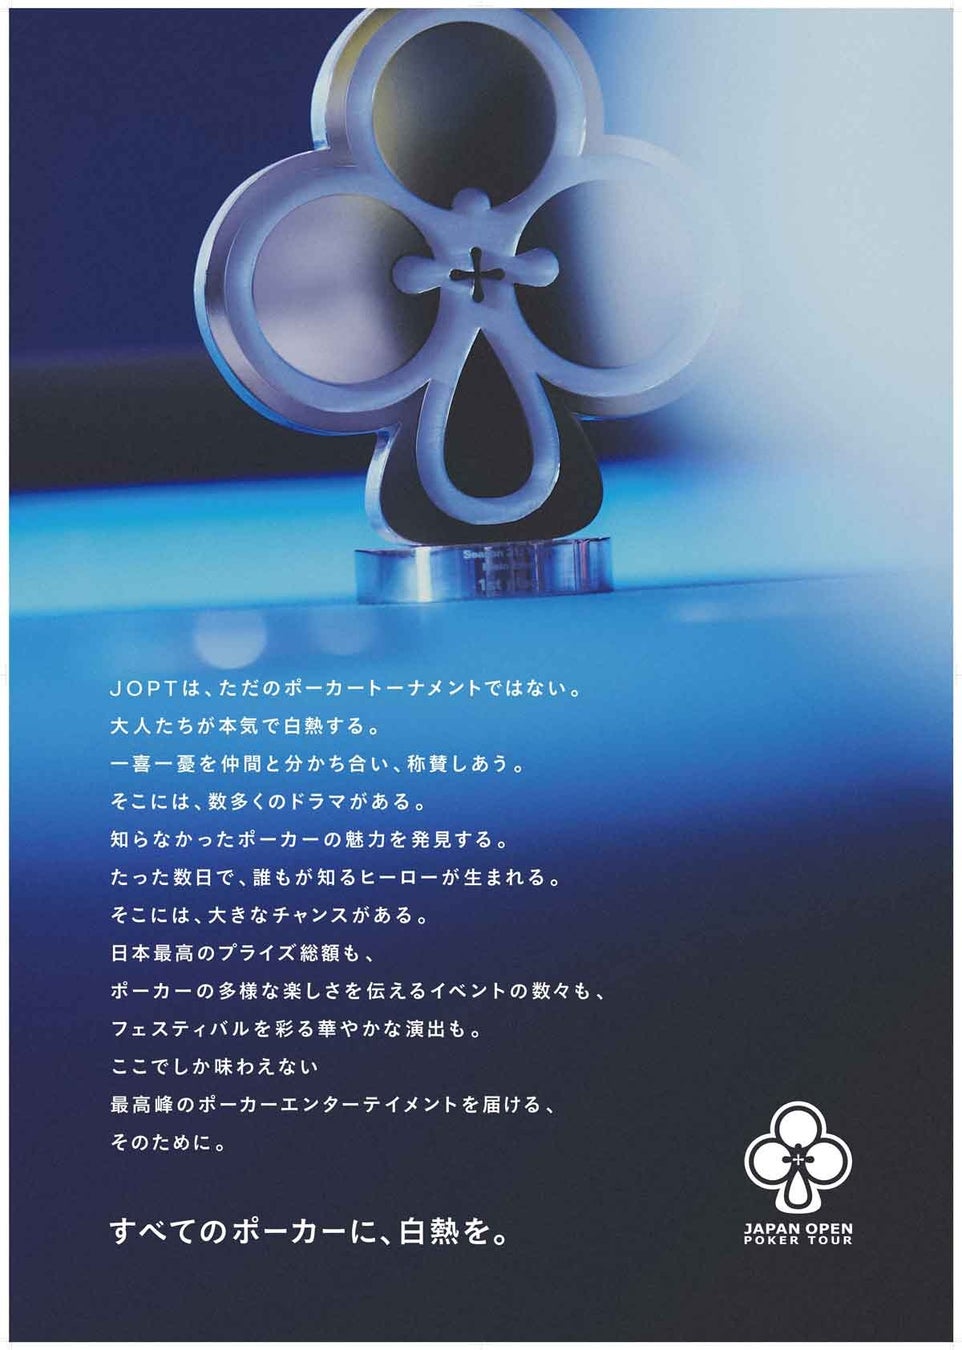 ジャパンオープンポーカーツアー株式会社、ステートメントムービー「すべてのポーカーに、白熱を。」公開。